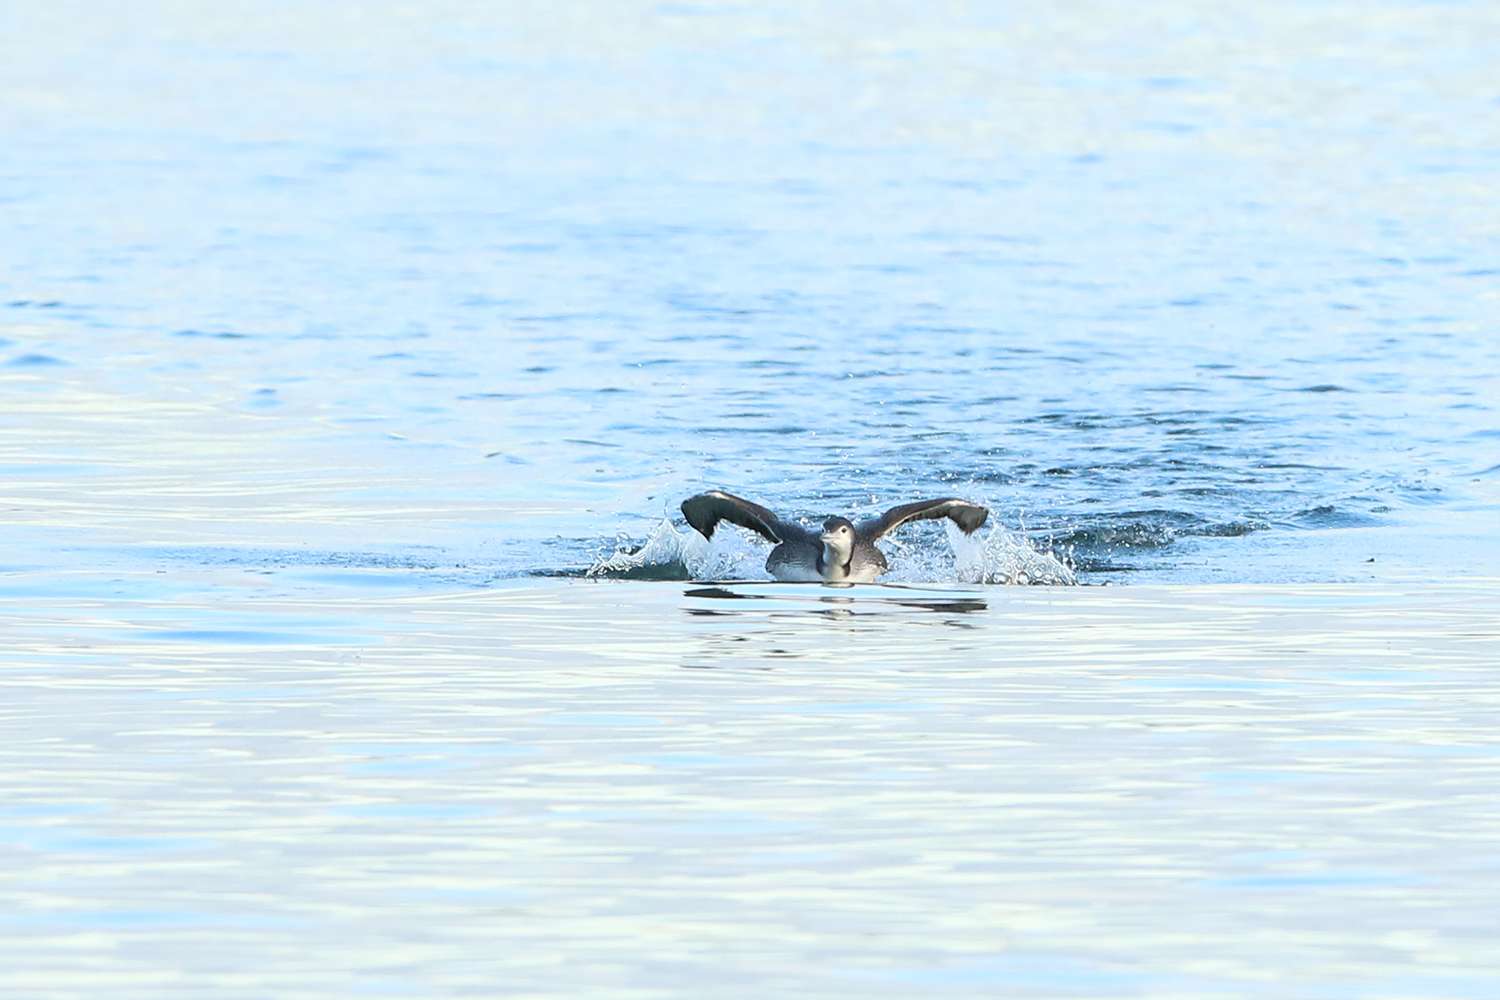 Water-logged, swimming common loon, (juvenile) Lake Lanier, 2019.